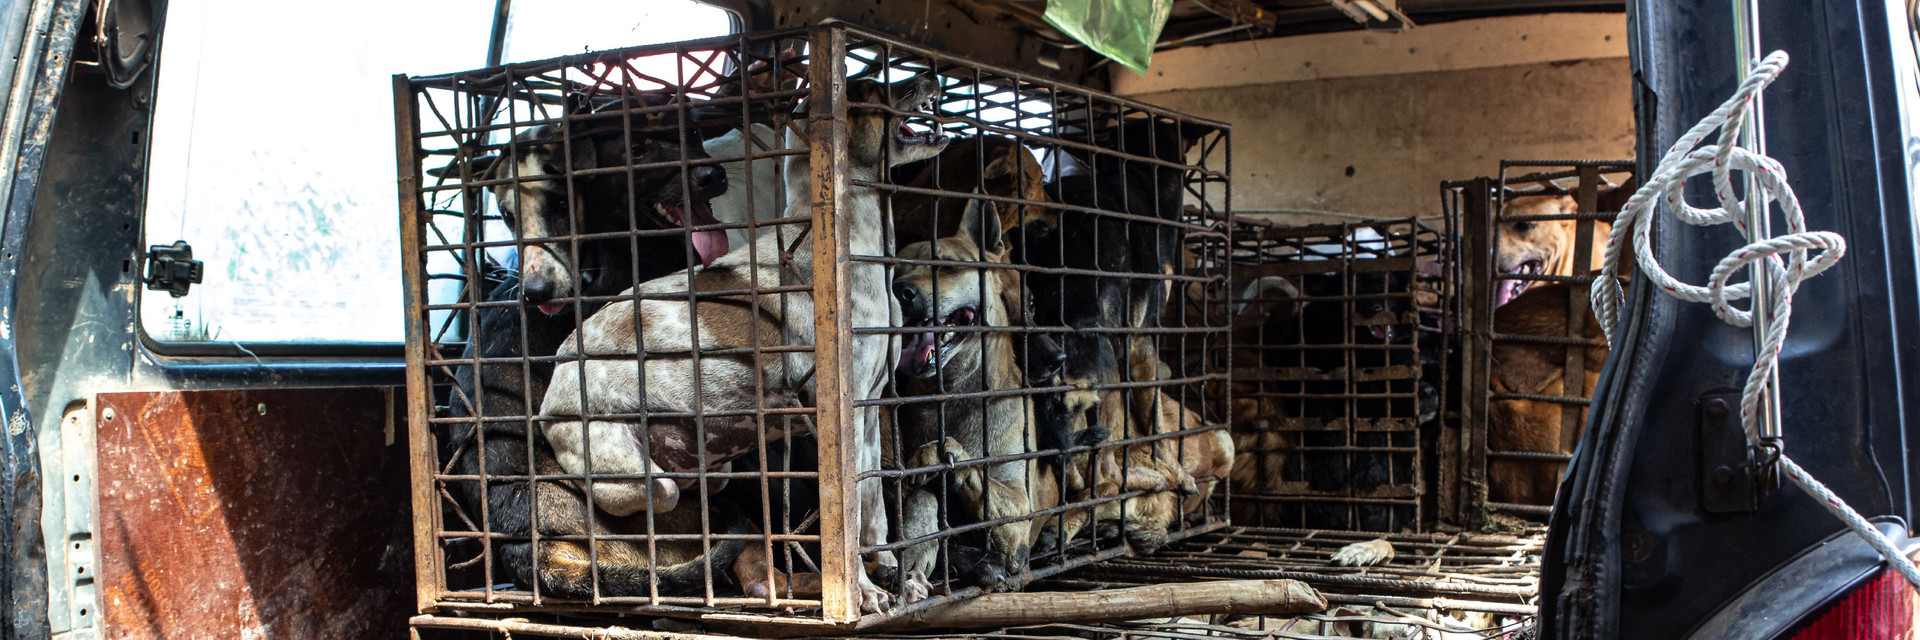 Hunde die vorm Hundefleischhandel gerettet wurden